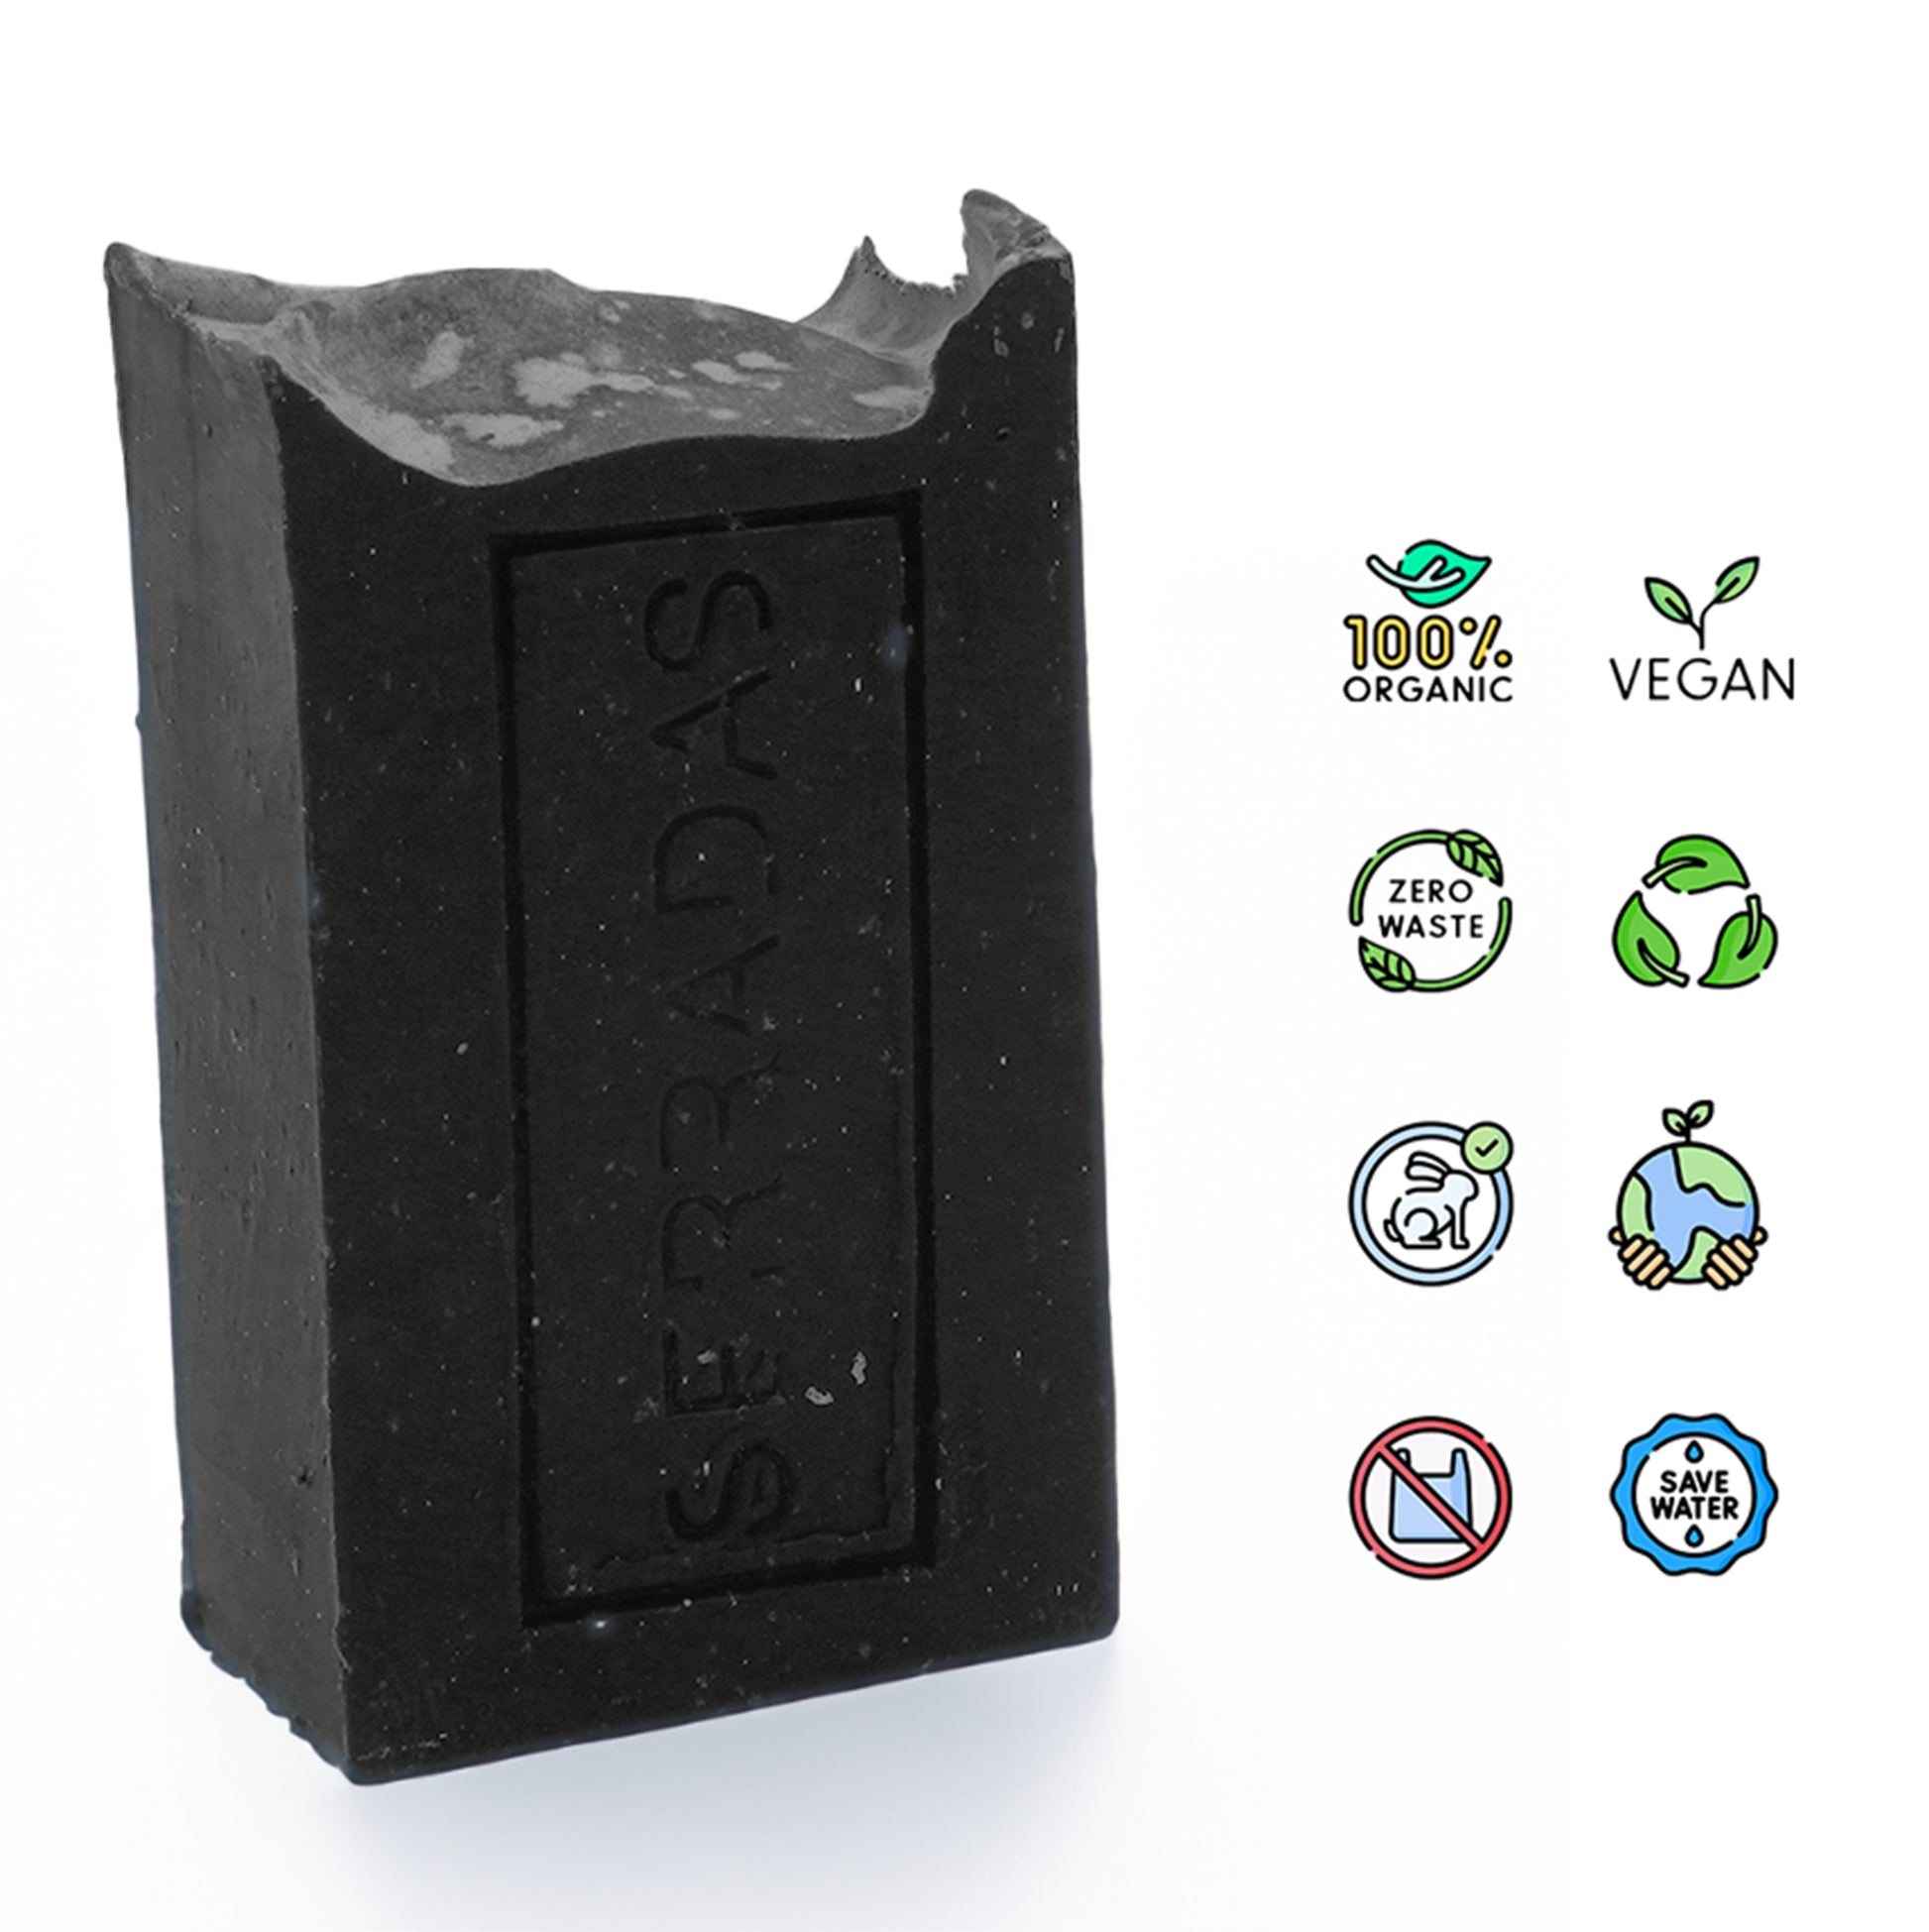 Sabonete Artesanal e Natural de carvão Vegan Organic zero waste